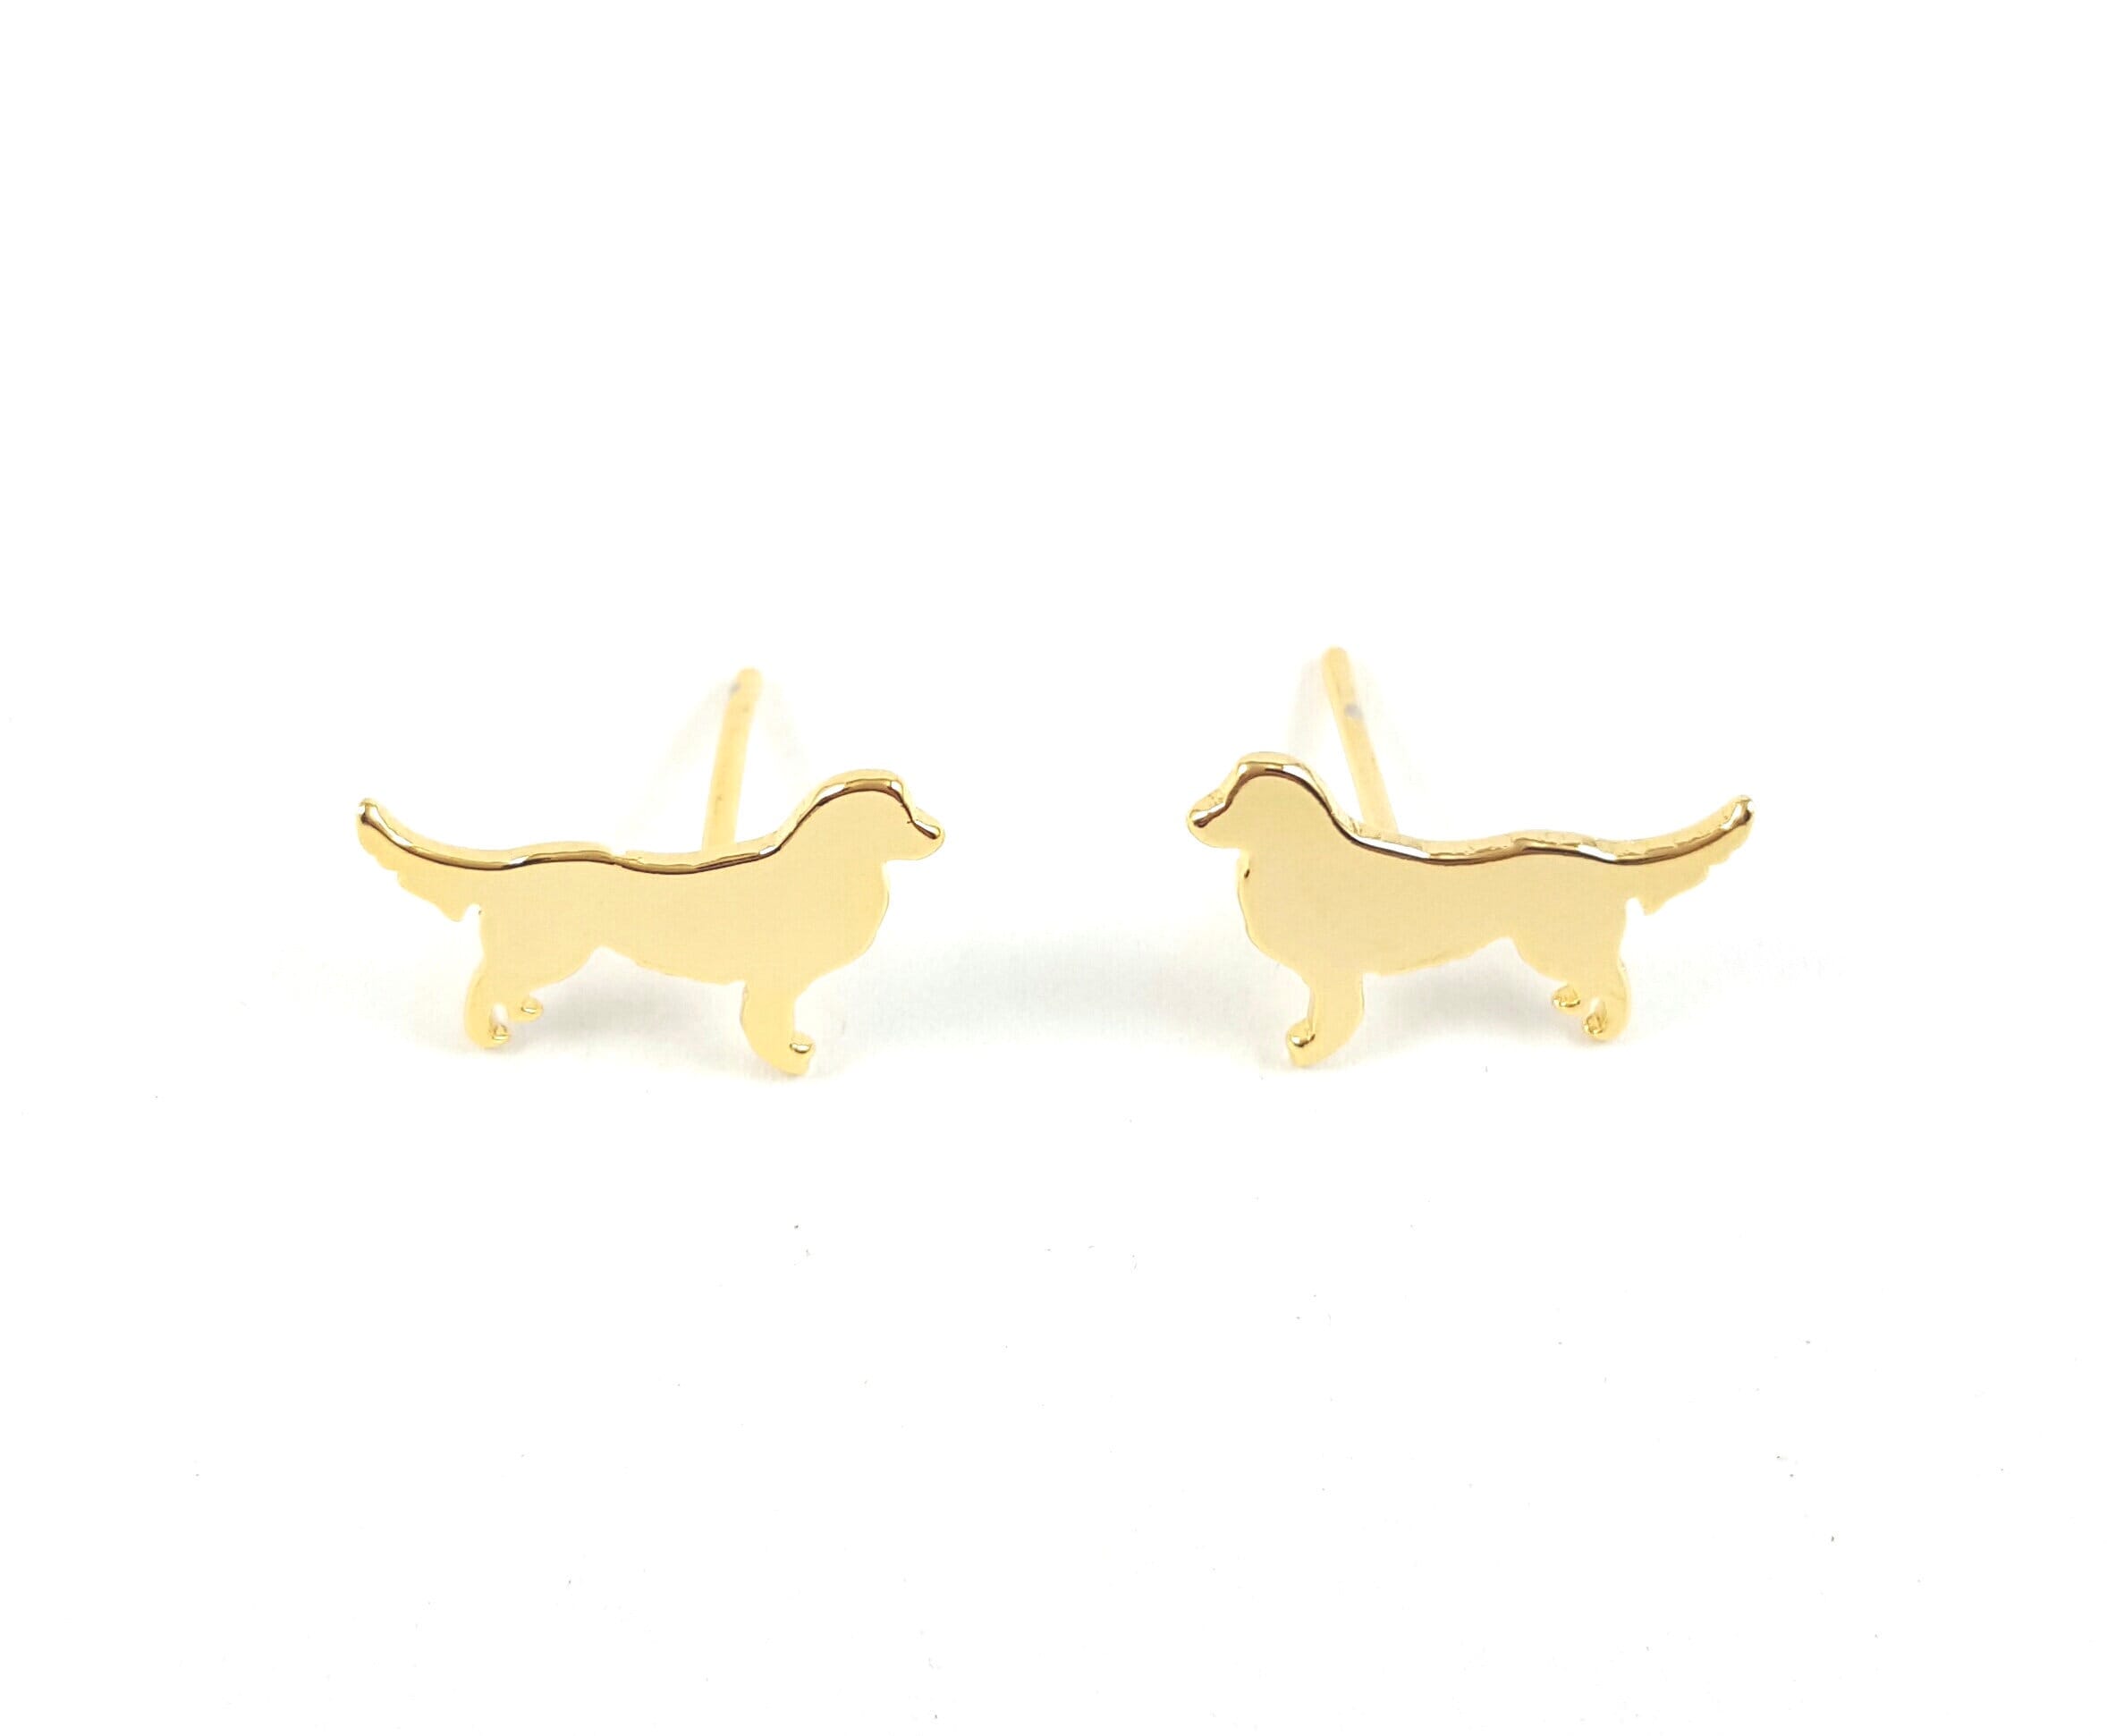 Golden Retriever Earrings